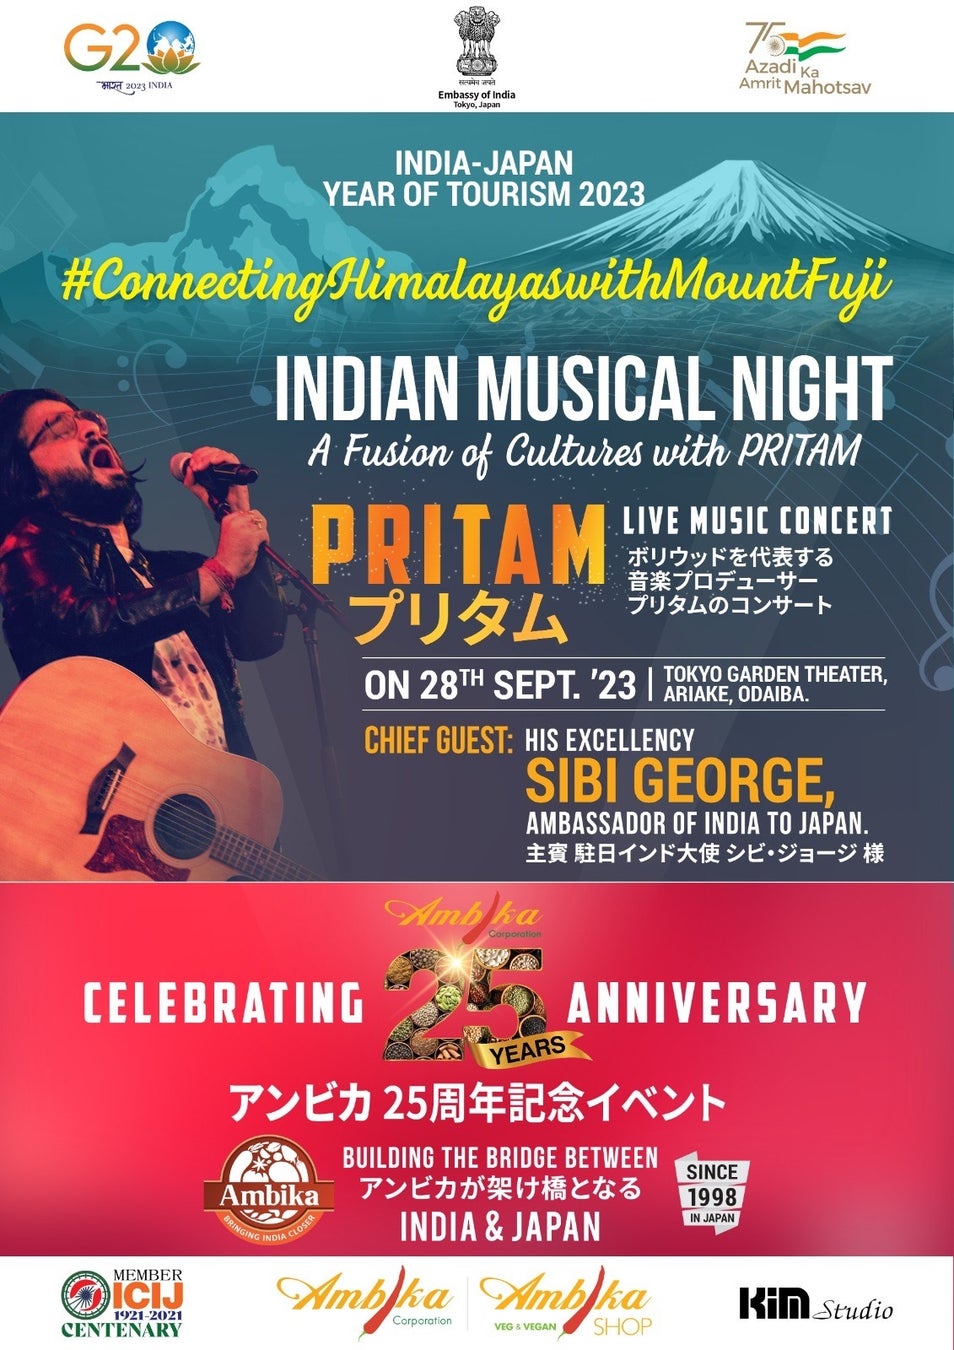 【日印記念事業】インド大使館とアンビカが、ボリウッド映画音楽の巨匠 プリタムによる日本初コンサートを開催